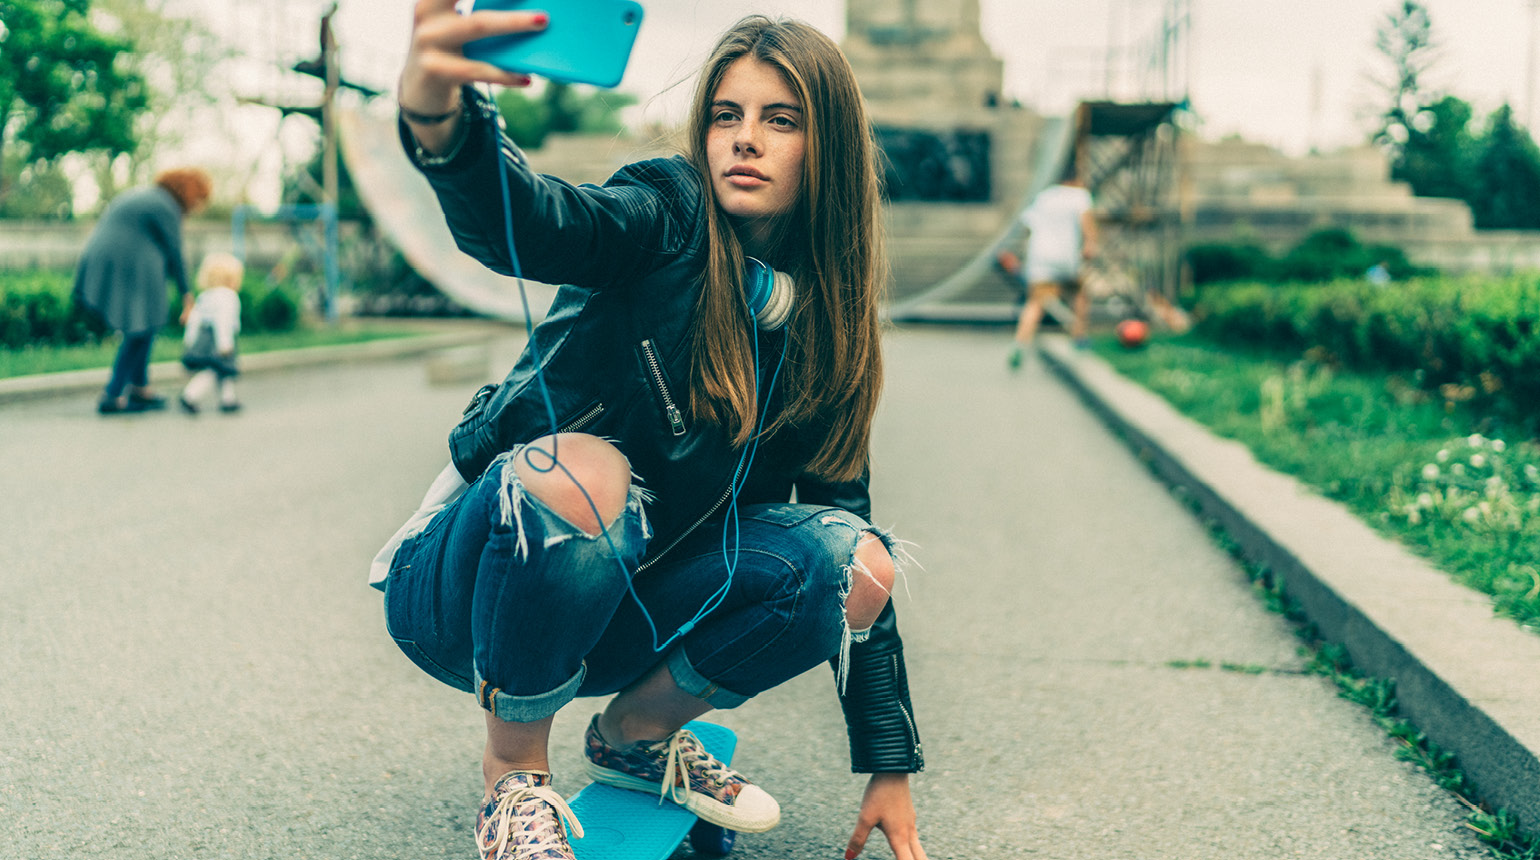 Eine Jugendliche macht ein Selfie auf dem Skateboard.  